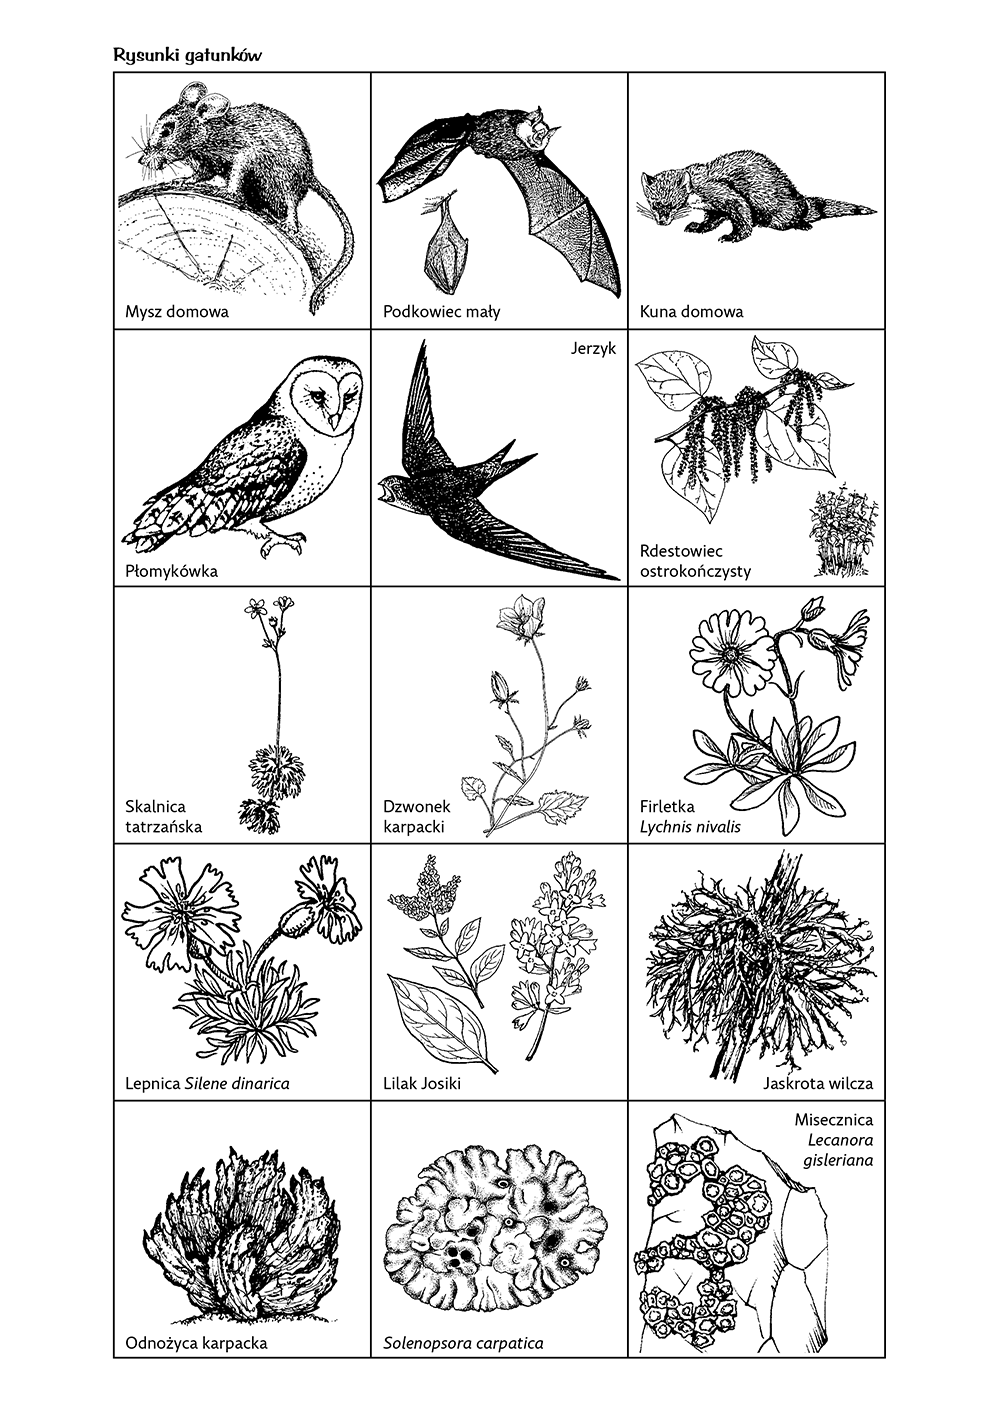 Różnorodność biologiczna - rysunki gatunków